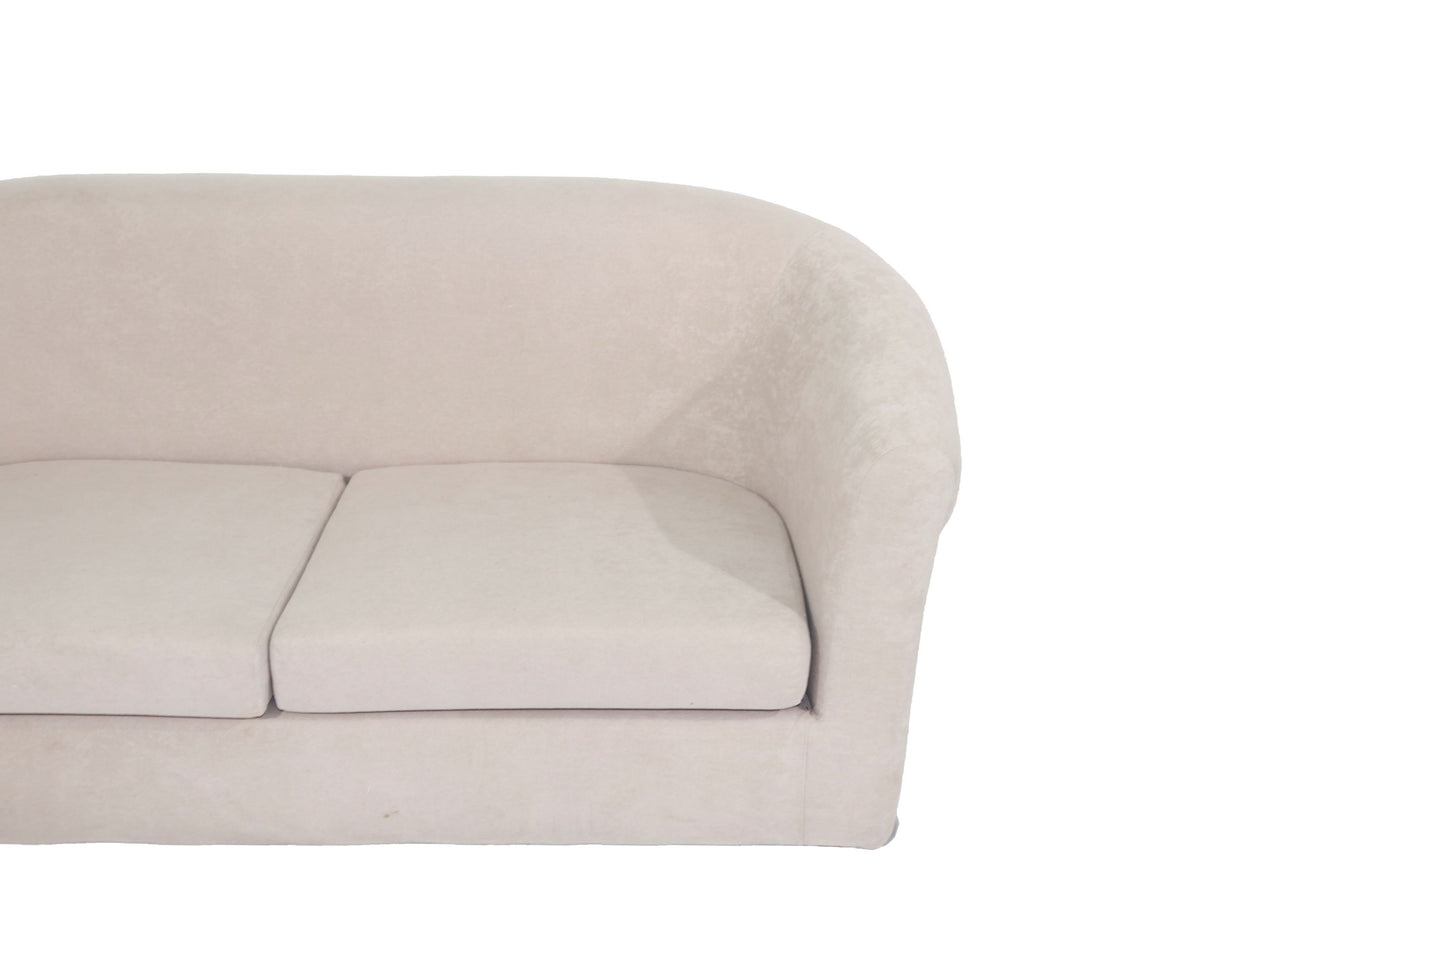 2 Seater Grey Fabric Sofa